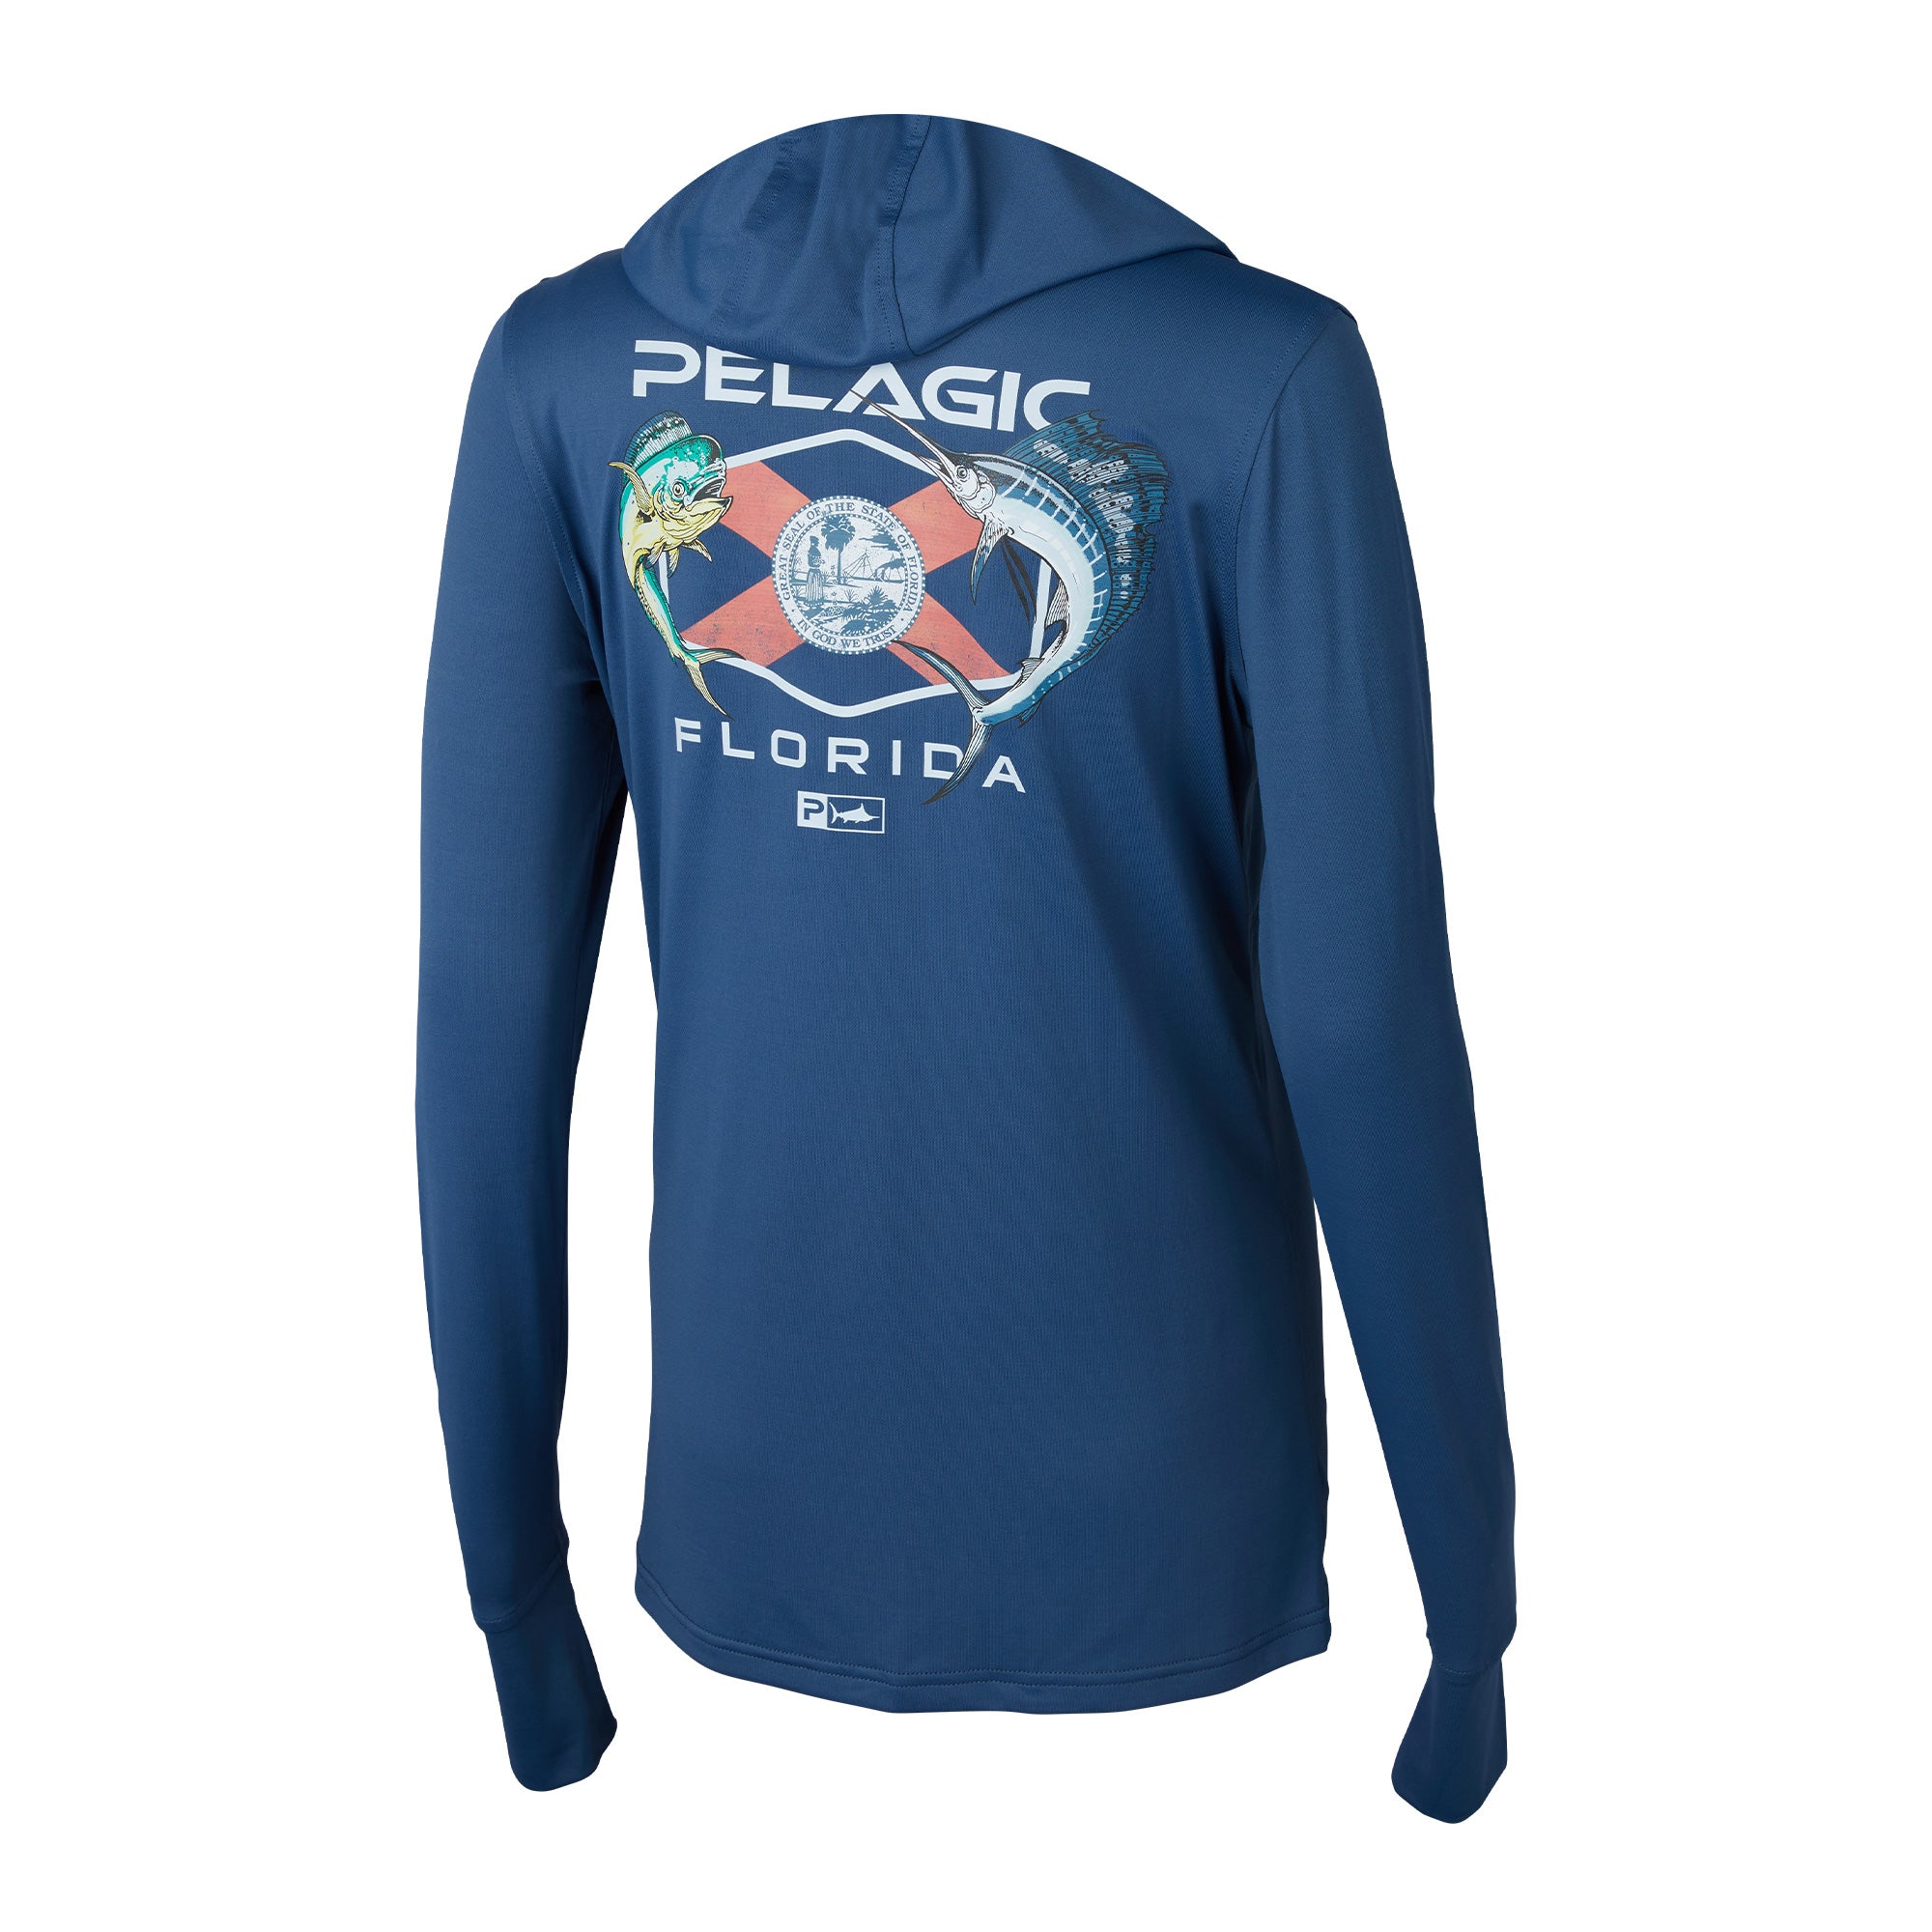 pelagic Women Hood Fishing Shirt long sleeve Fishing clothing